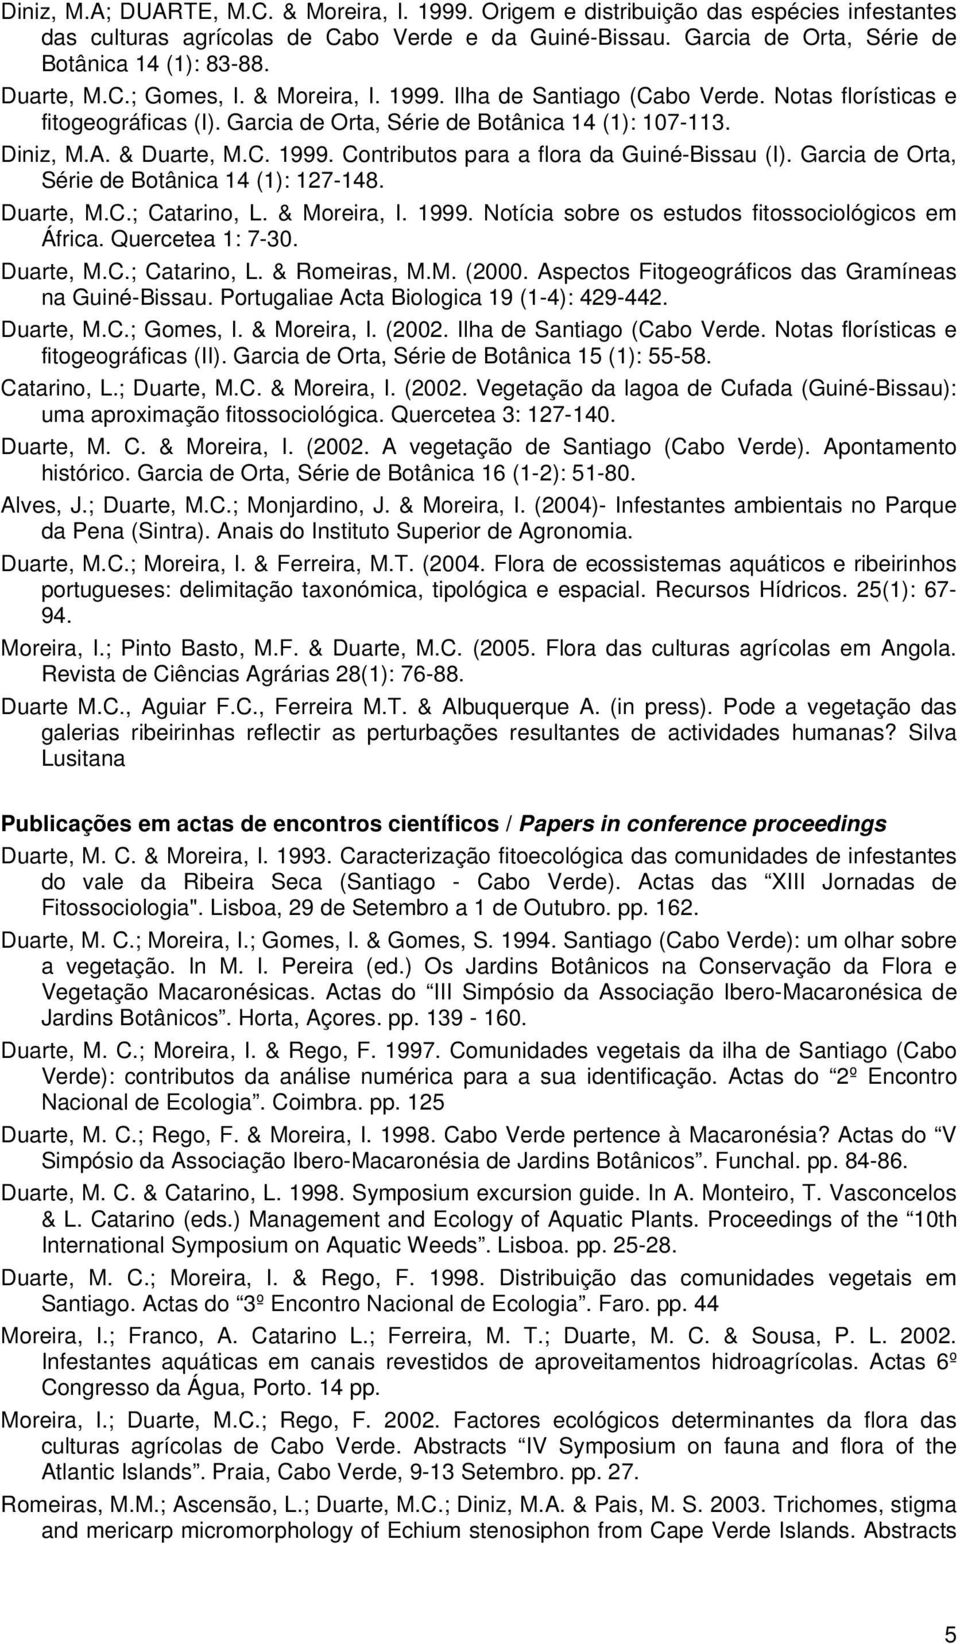 Garcia de Orta, Série de Botânica 14 (1): 127-148. Duarte, M.C.; Catarino, L. & Moreira, I. 1999. Notícia sobre os estudos fitossociológicos em África. Quercetea 1: 7-30. Duarte, M.C.; Catarino, L. & Romeiras, M.